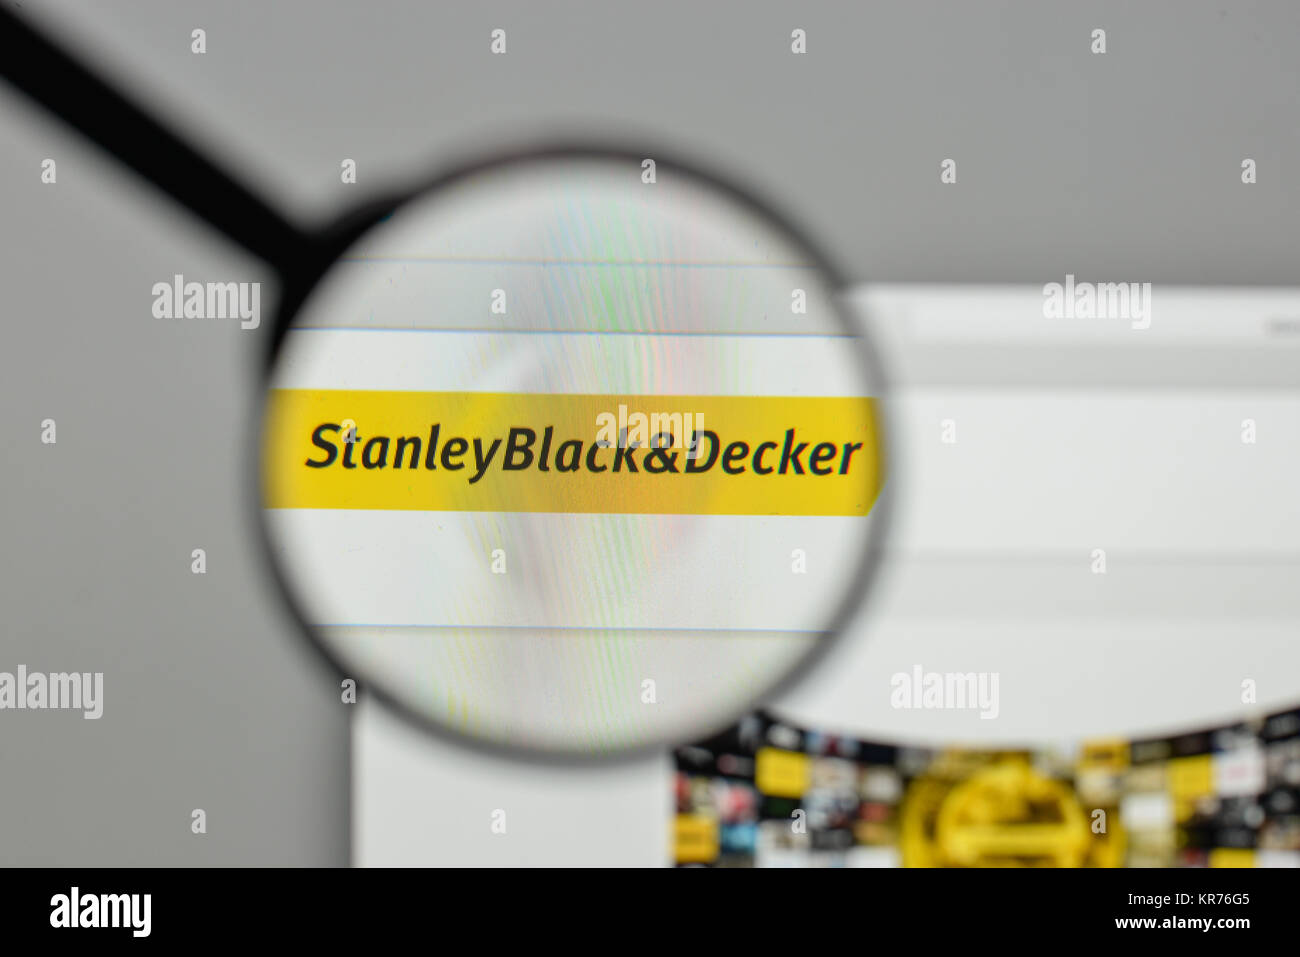 https://c8.alamy.com/comp/KR76G5/milan-italy-november-1-2017-stanley-black-decker-logo-on-the-website-KR76G5.jpg